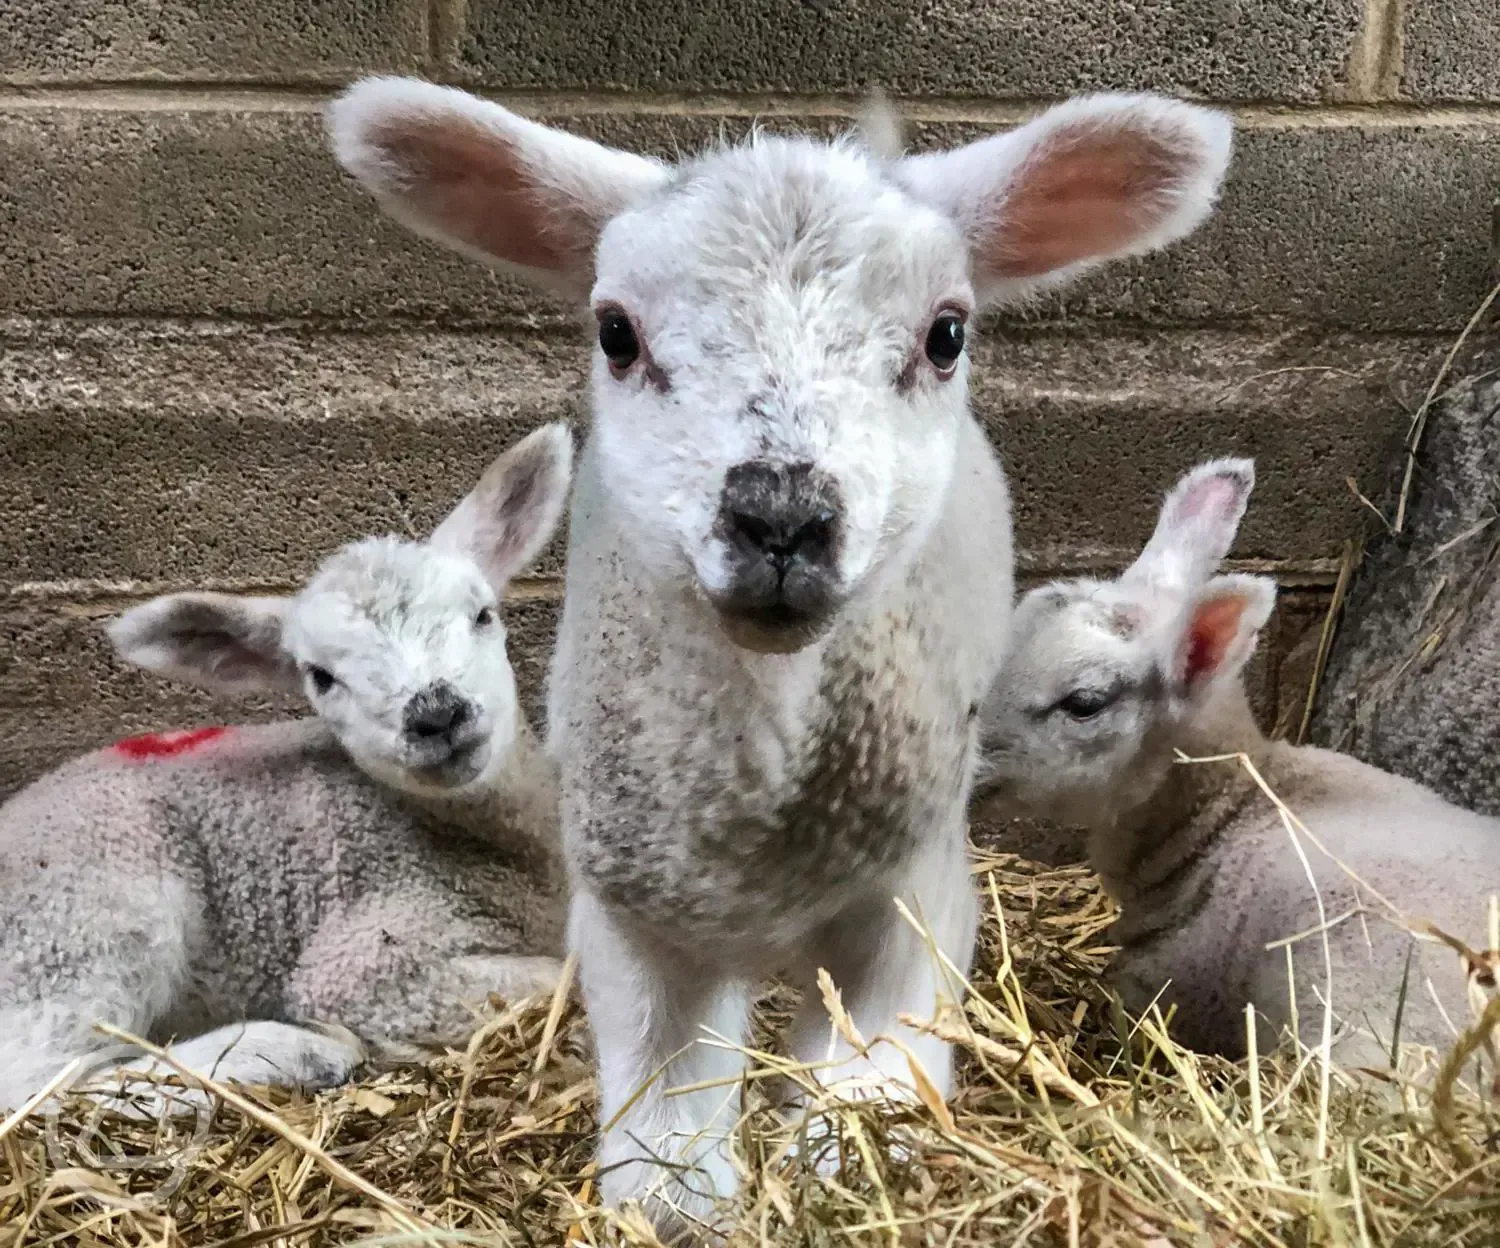 Lambs at the farm